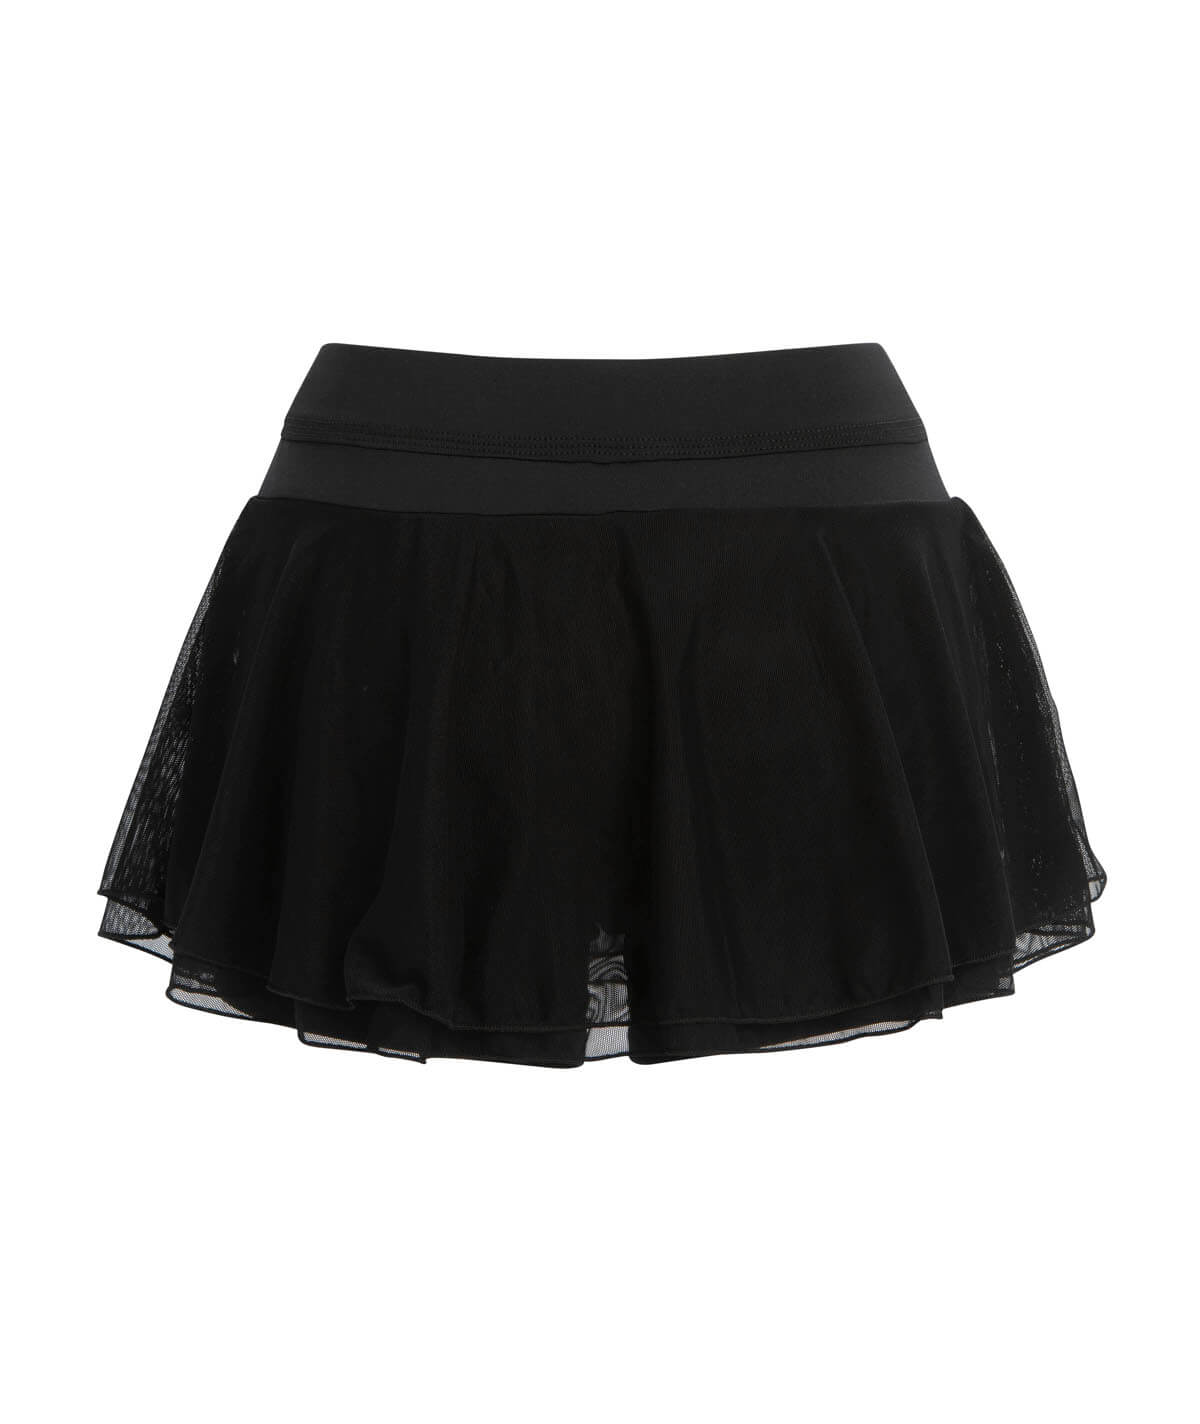 GK All Star Double-Layer Flutter Skirt